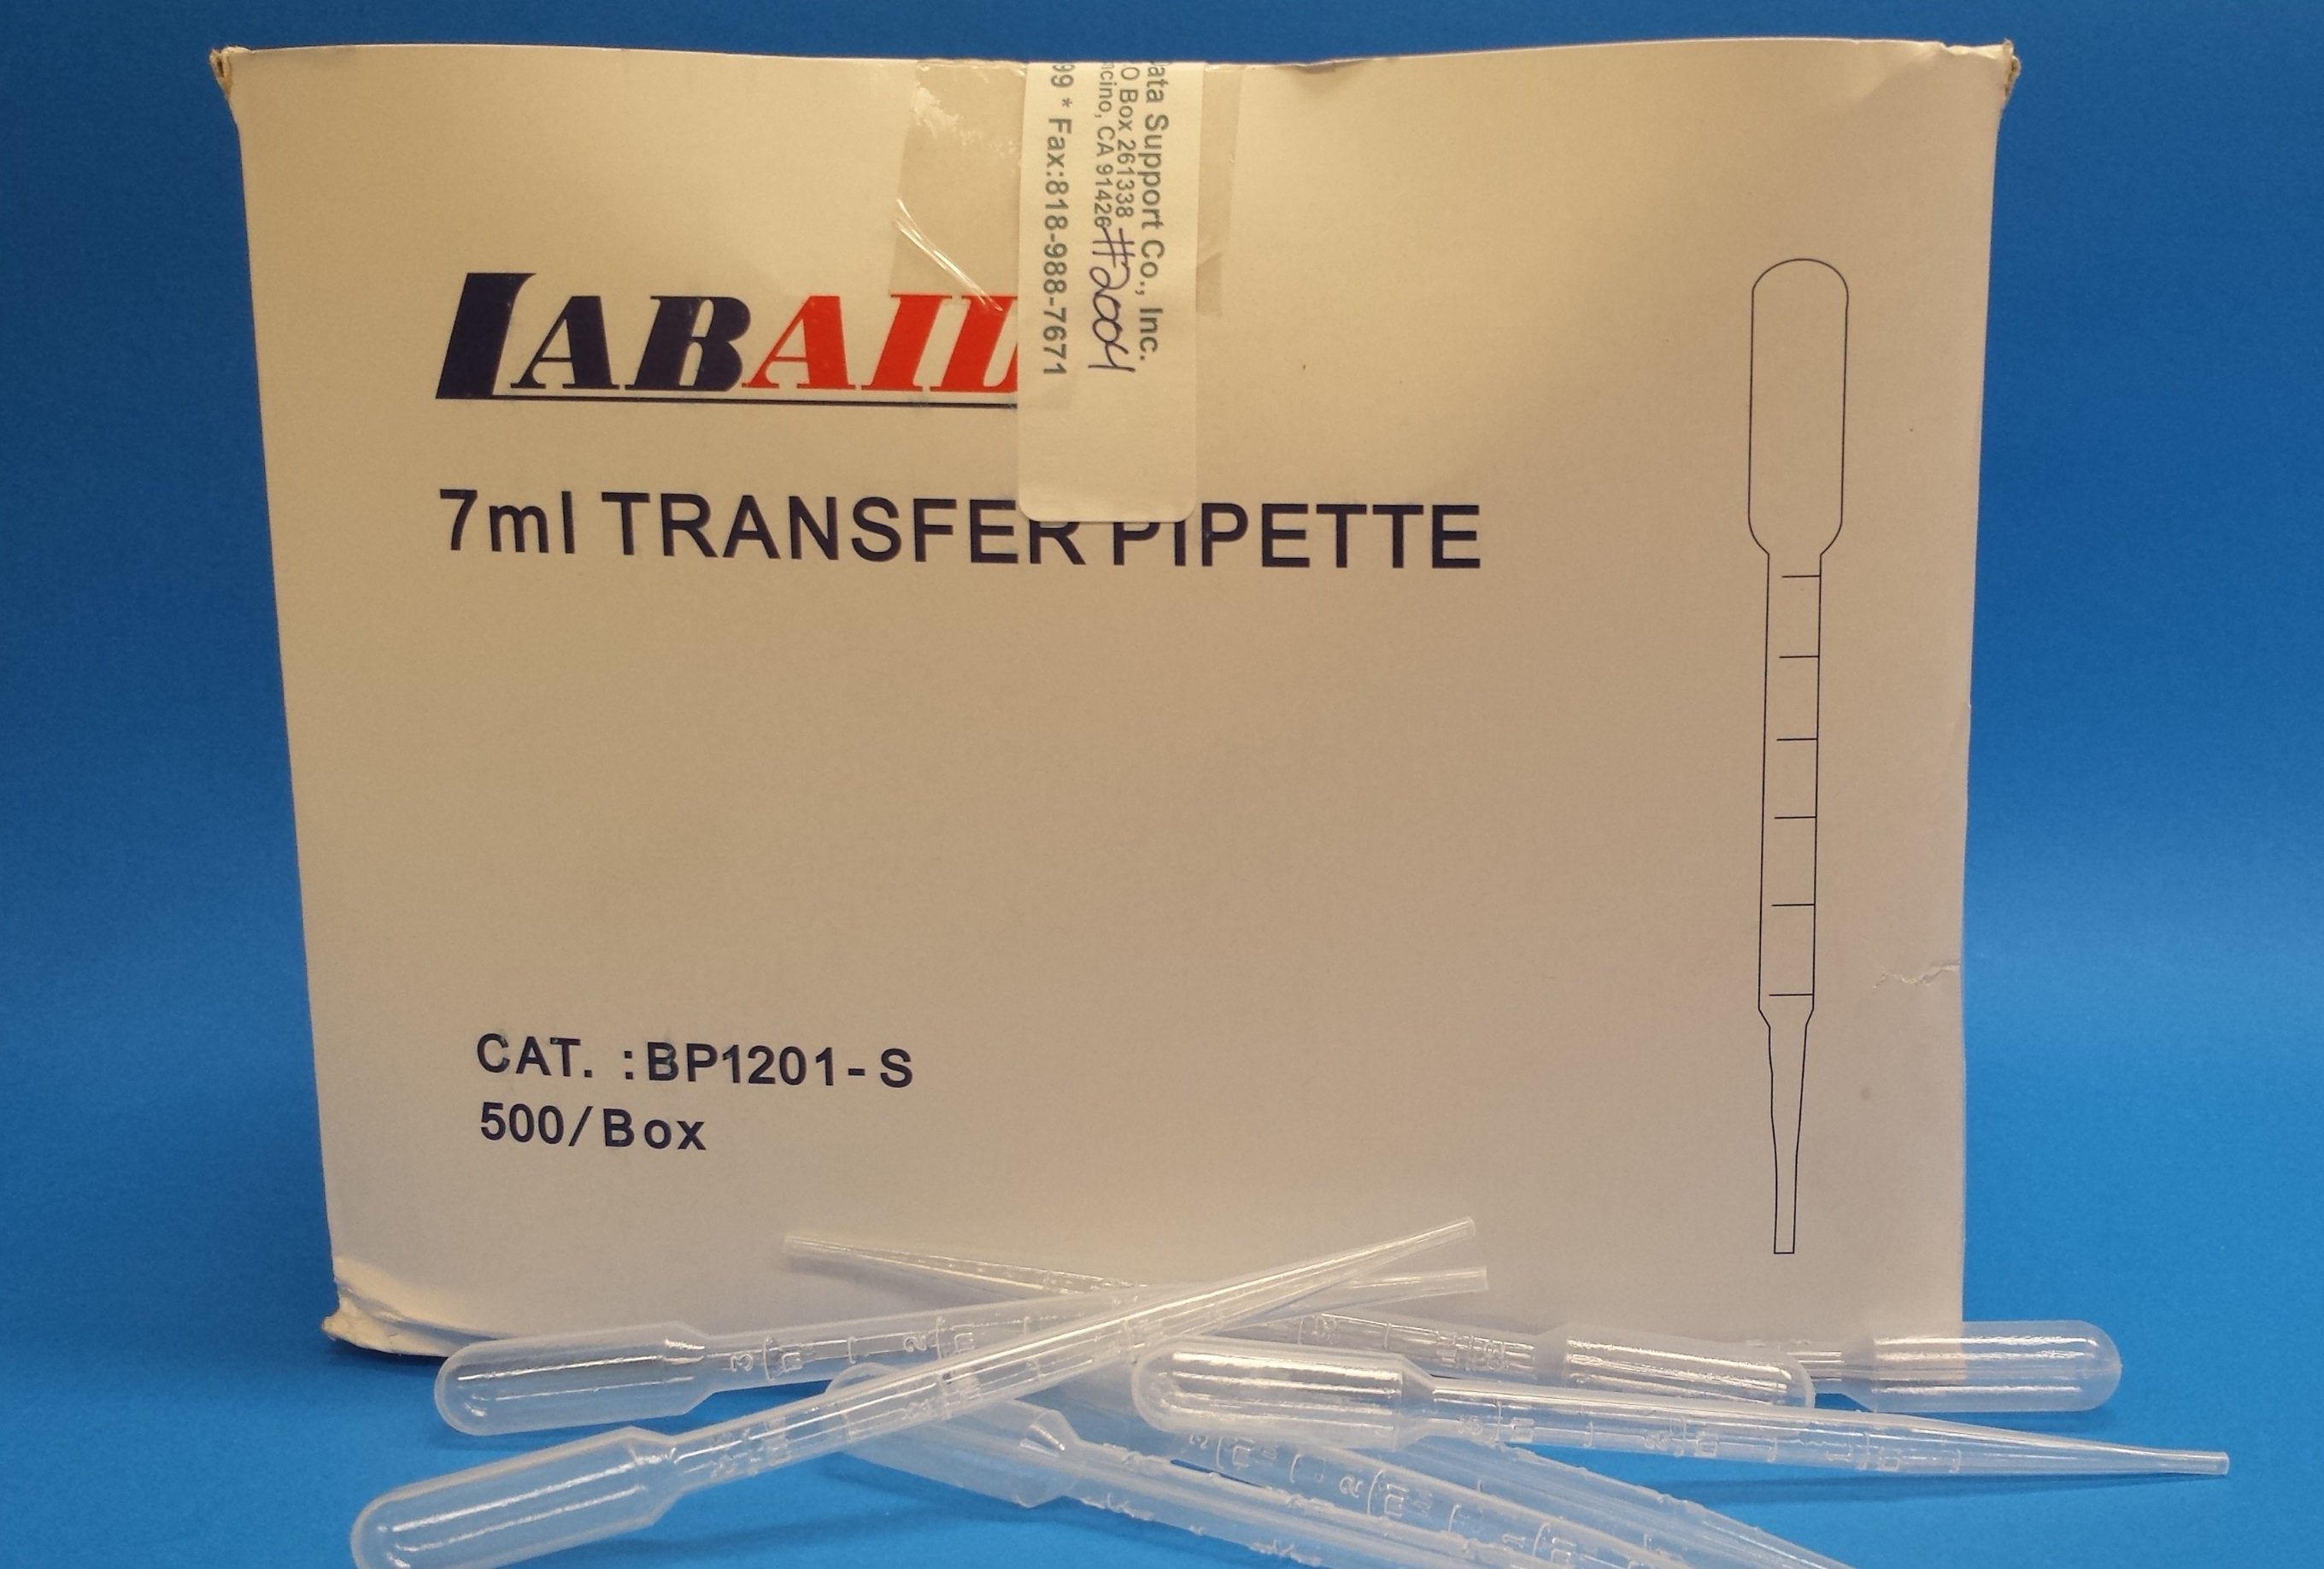 Plastic Transfer Pipette (500 Box) (PN:2004)